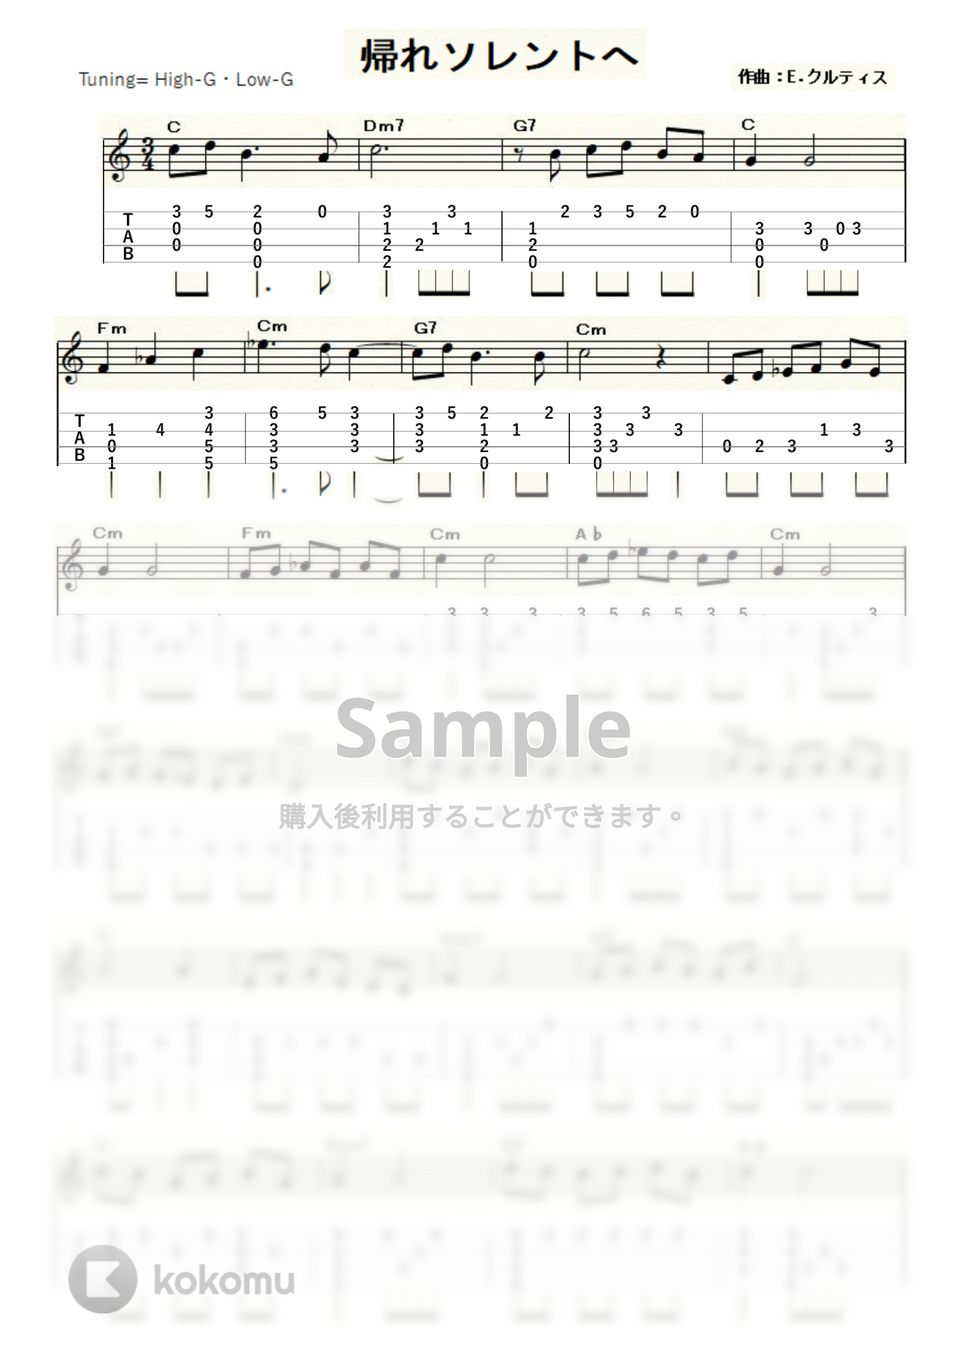 帰れソレントへ (ｳｸﾚﾚｿﾛ / High-G,Low-G / 中級) by ukulelepapa